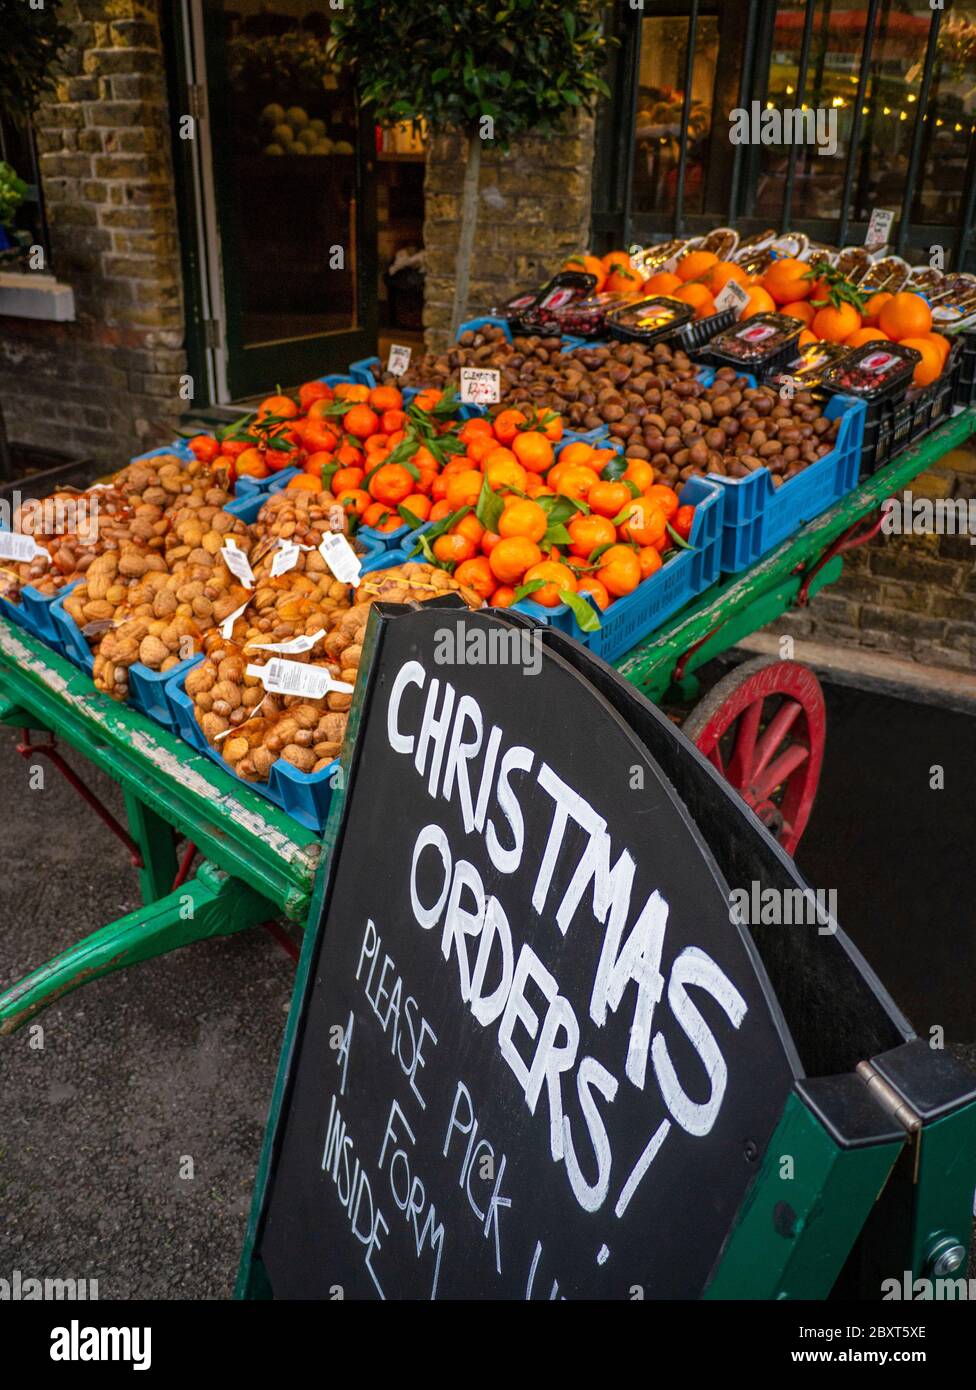 BOROUGH MERCATO TRADIZIONALE TRADERS BARROW selezione di verdure fresche e frutta in vendita, con lavagna che promuove gli ordini di Natale al Borough Market Southwark Londra UK Foto Stock